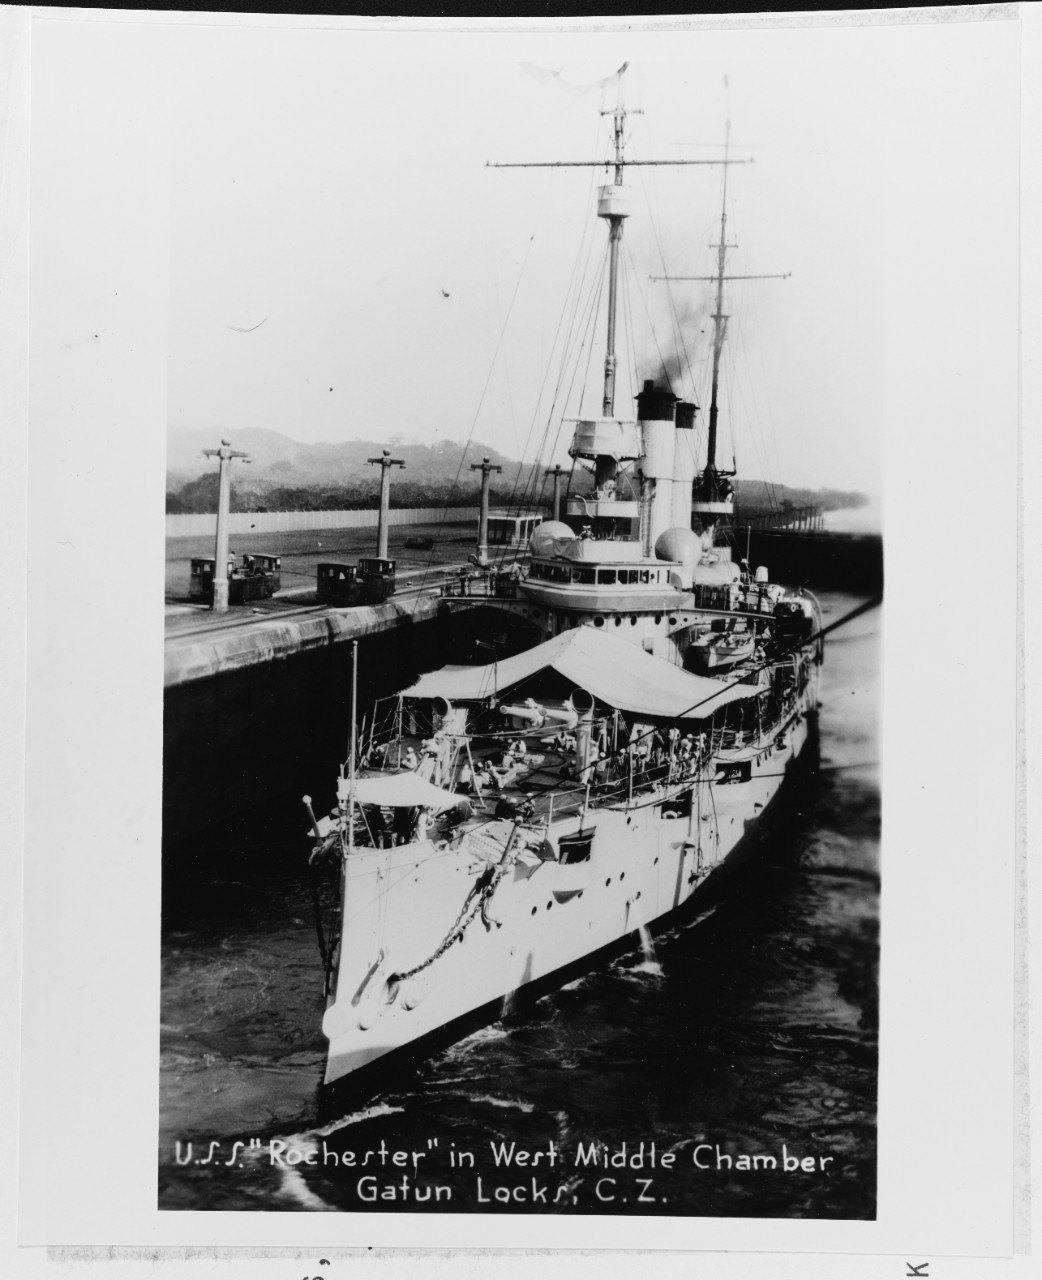 USS ROCKESTER (CA-2)